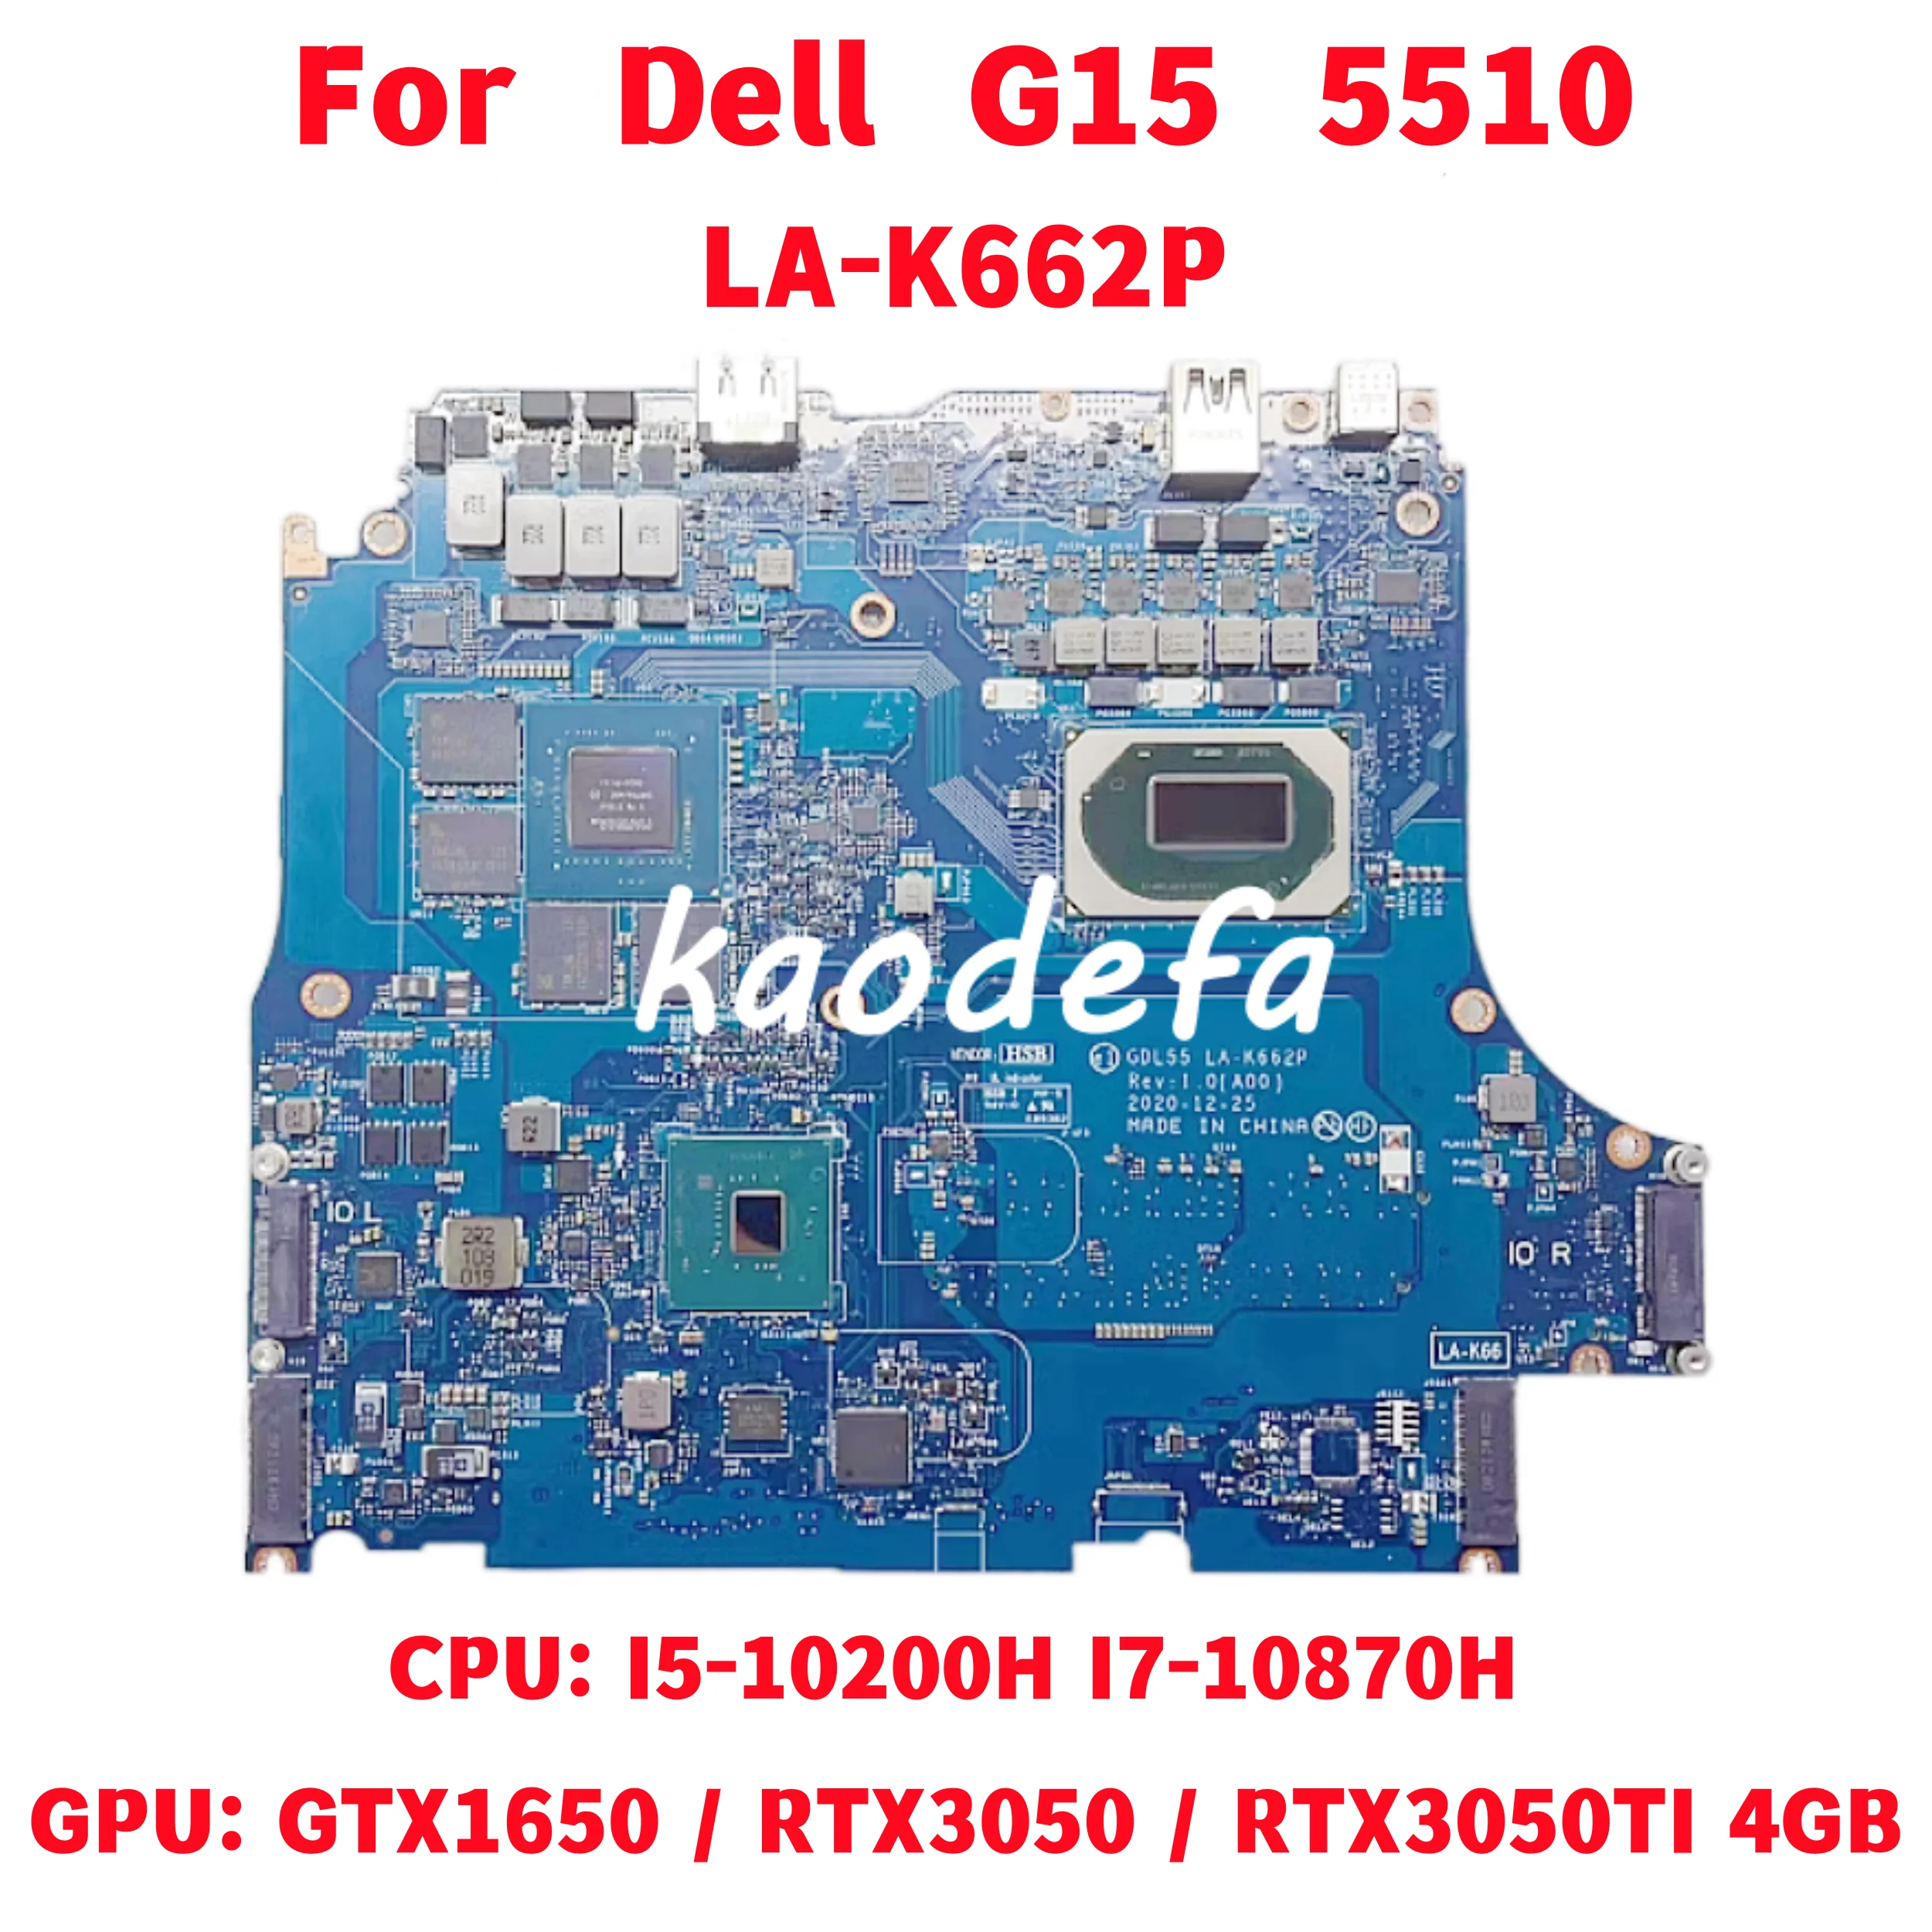 

LA-K662P Mainboard FOR Dell DELL G15 5510 Laptop Motherboard CPU: I5-10200H I7-10870H GPU: GTX1650 RTX3050 RTX3050TI 4GB Test OK